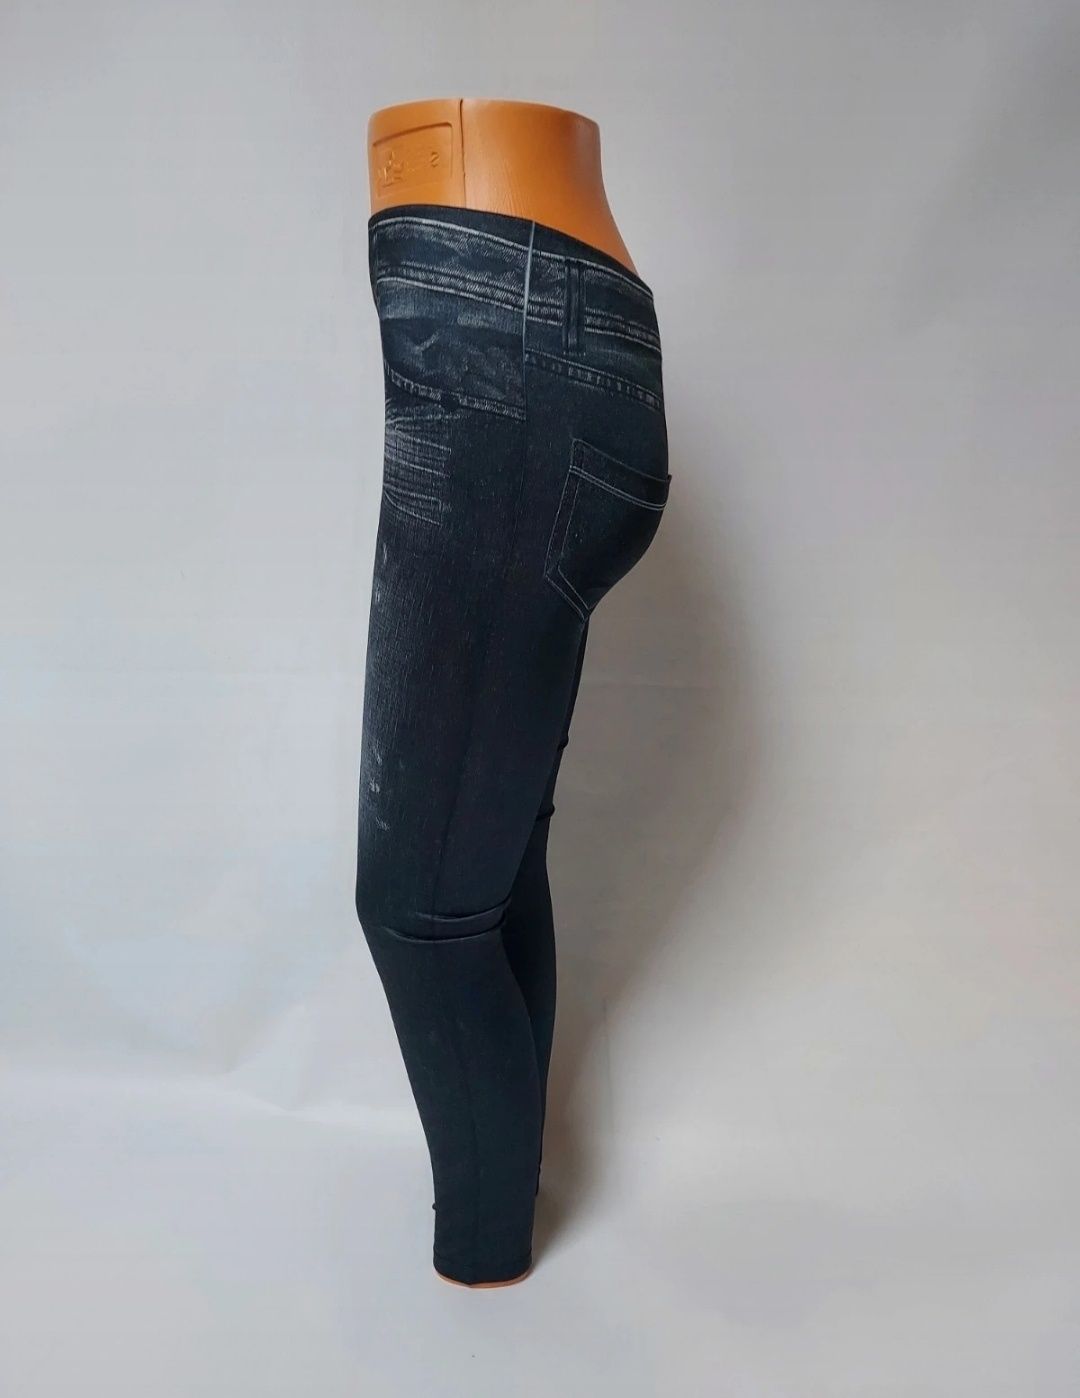 Nowe grafitowe legginsy imitujące dżinsy z kieszonkami  M 38 L 40